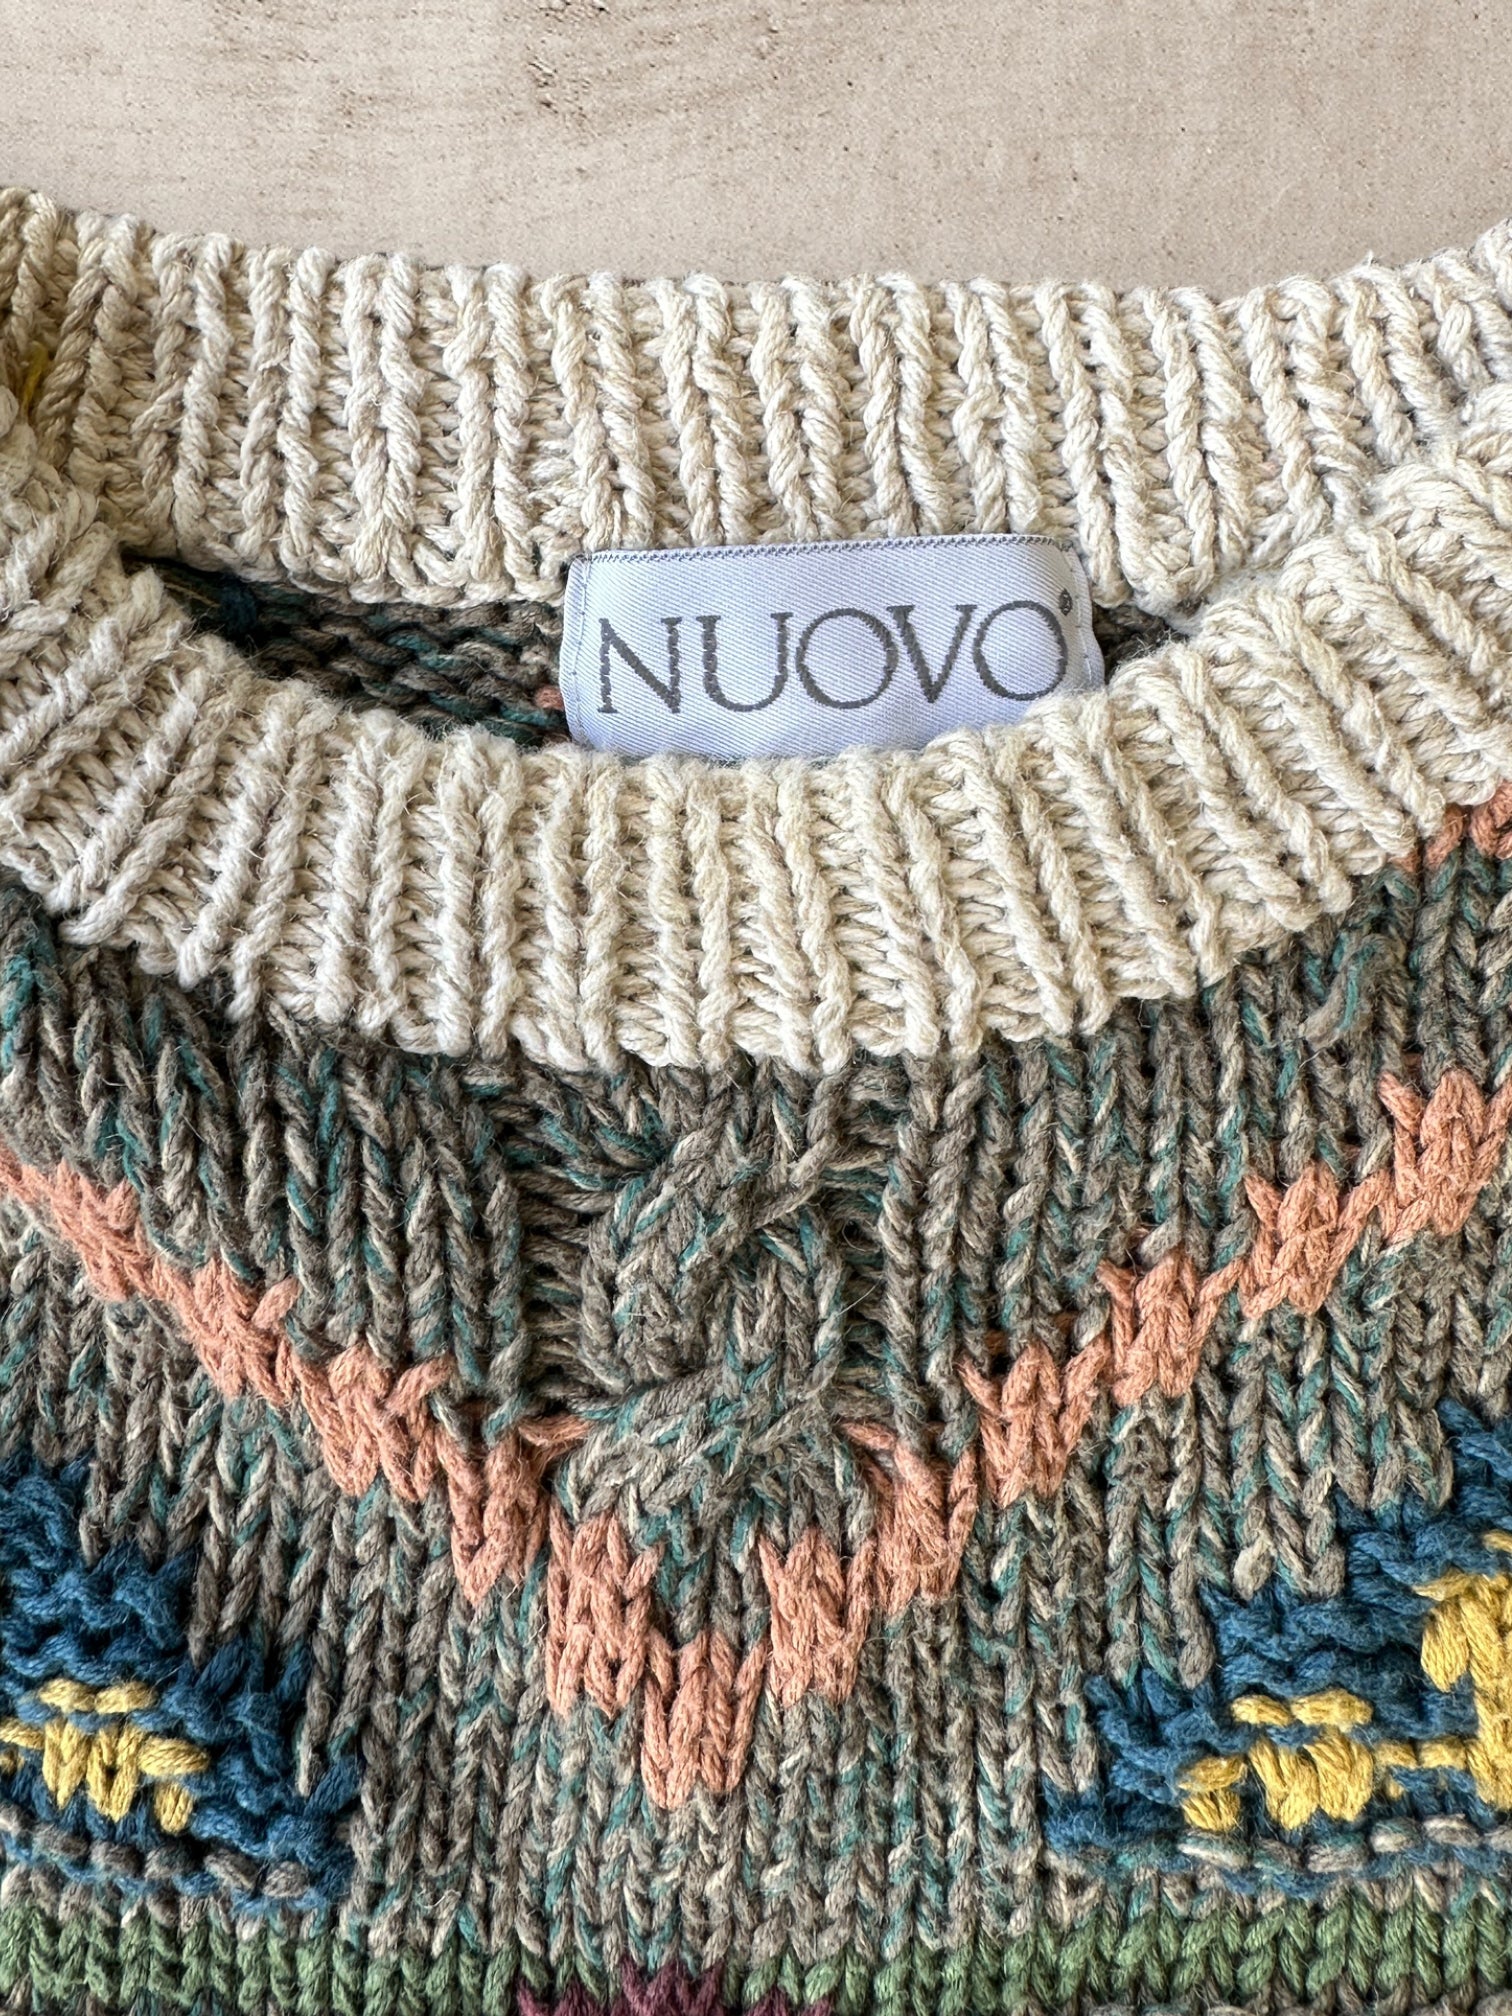 90s Novo Multicolor Knit Sweater - XL